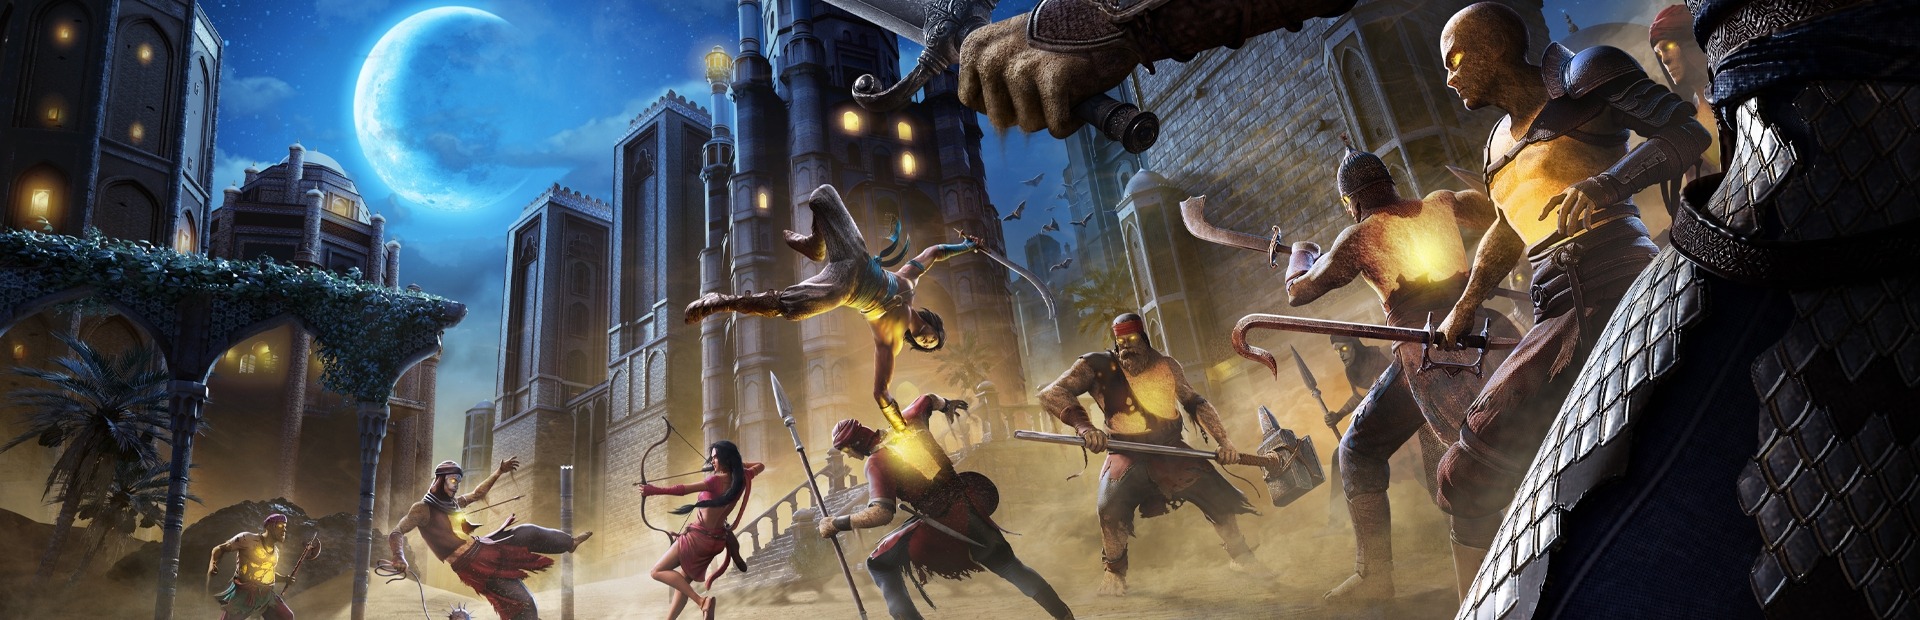 Prince of Persia: Las Arenas del Tiempo Remake